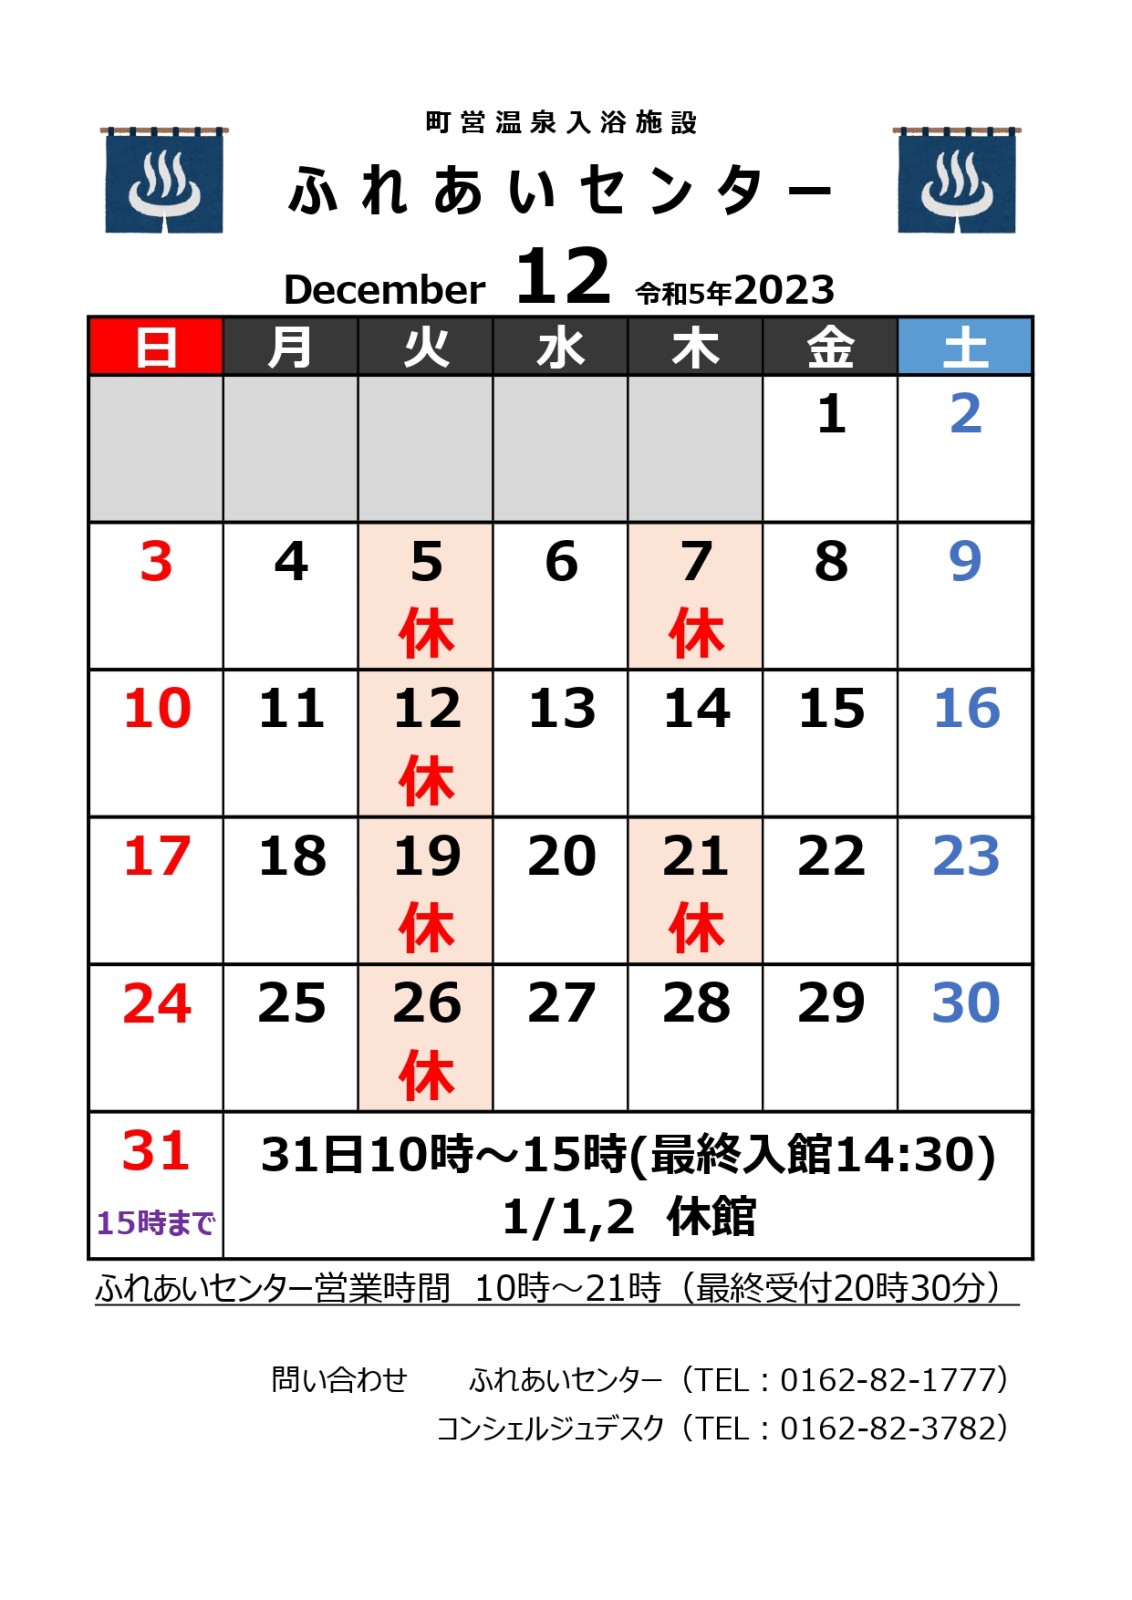 【ふれあいセンター】12月の営業について